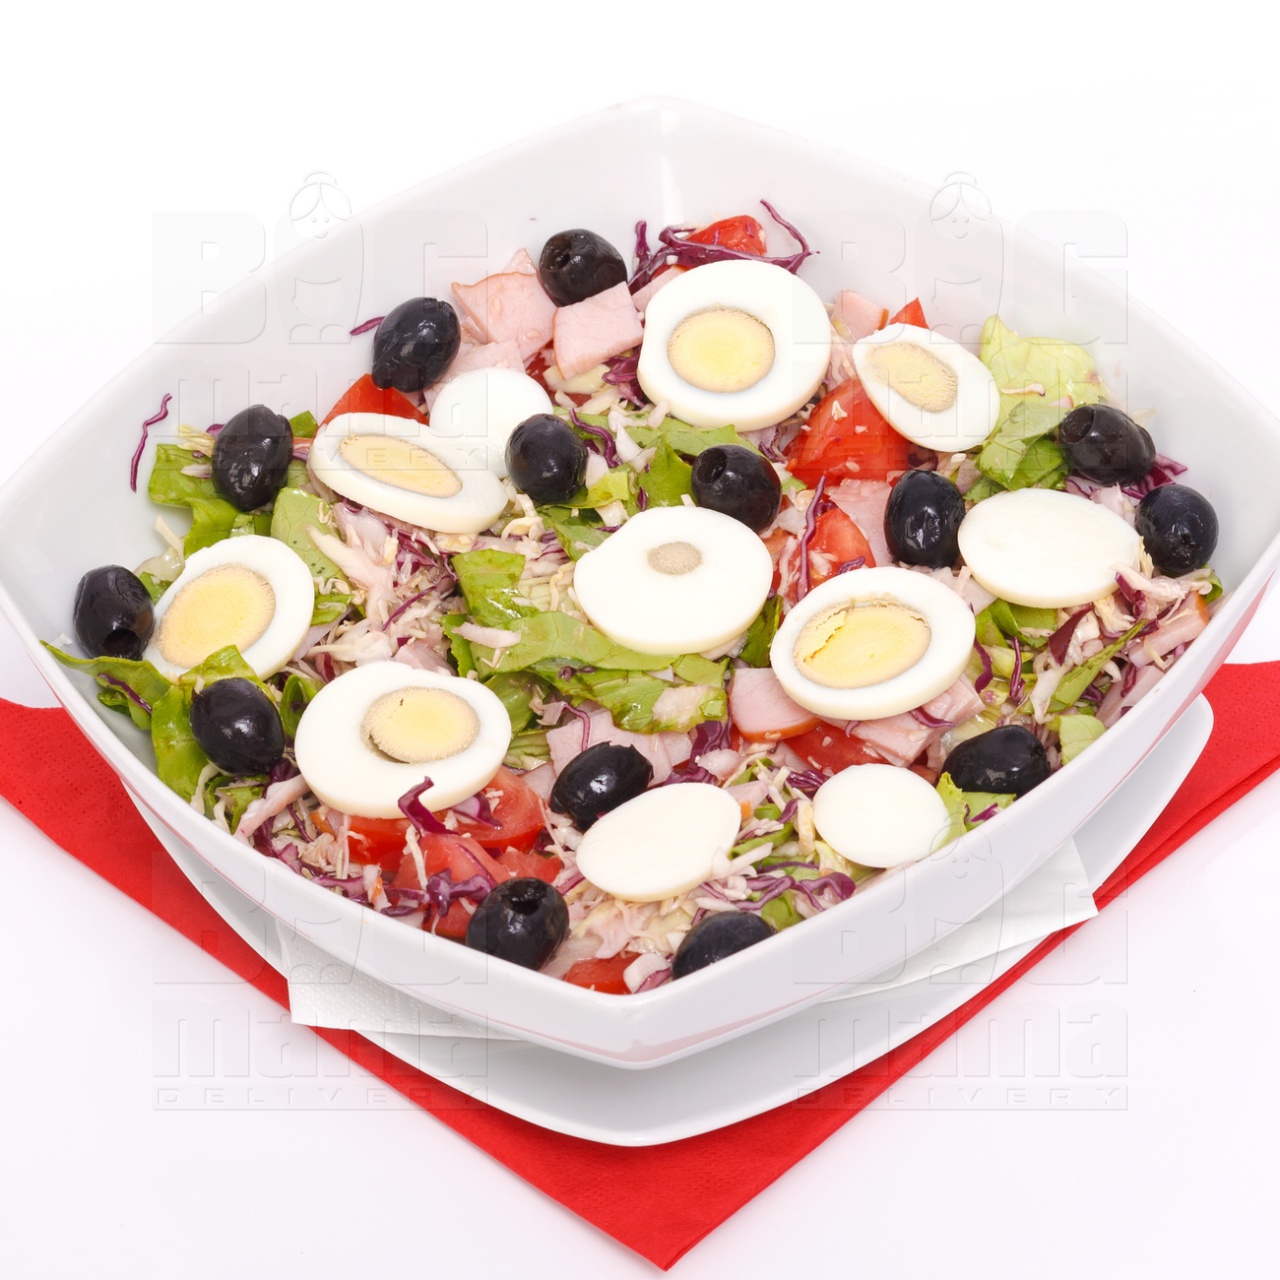 Product #168 image - Big Mama salad, half portion